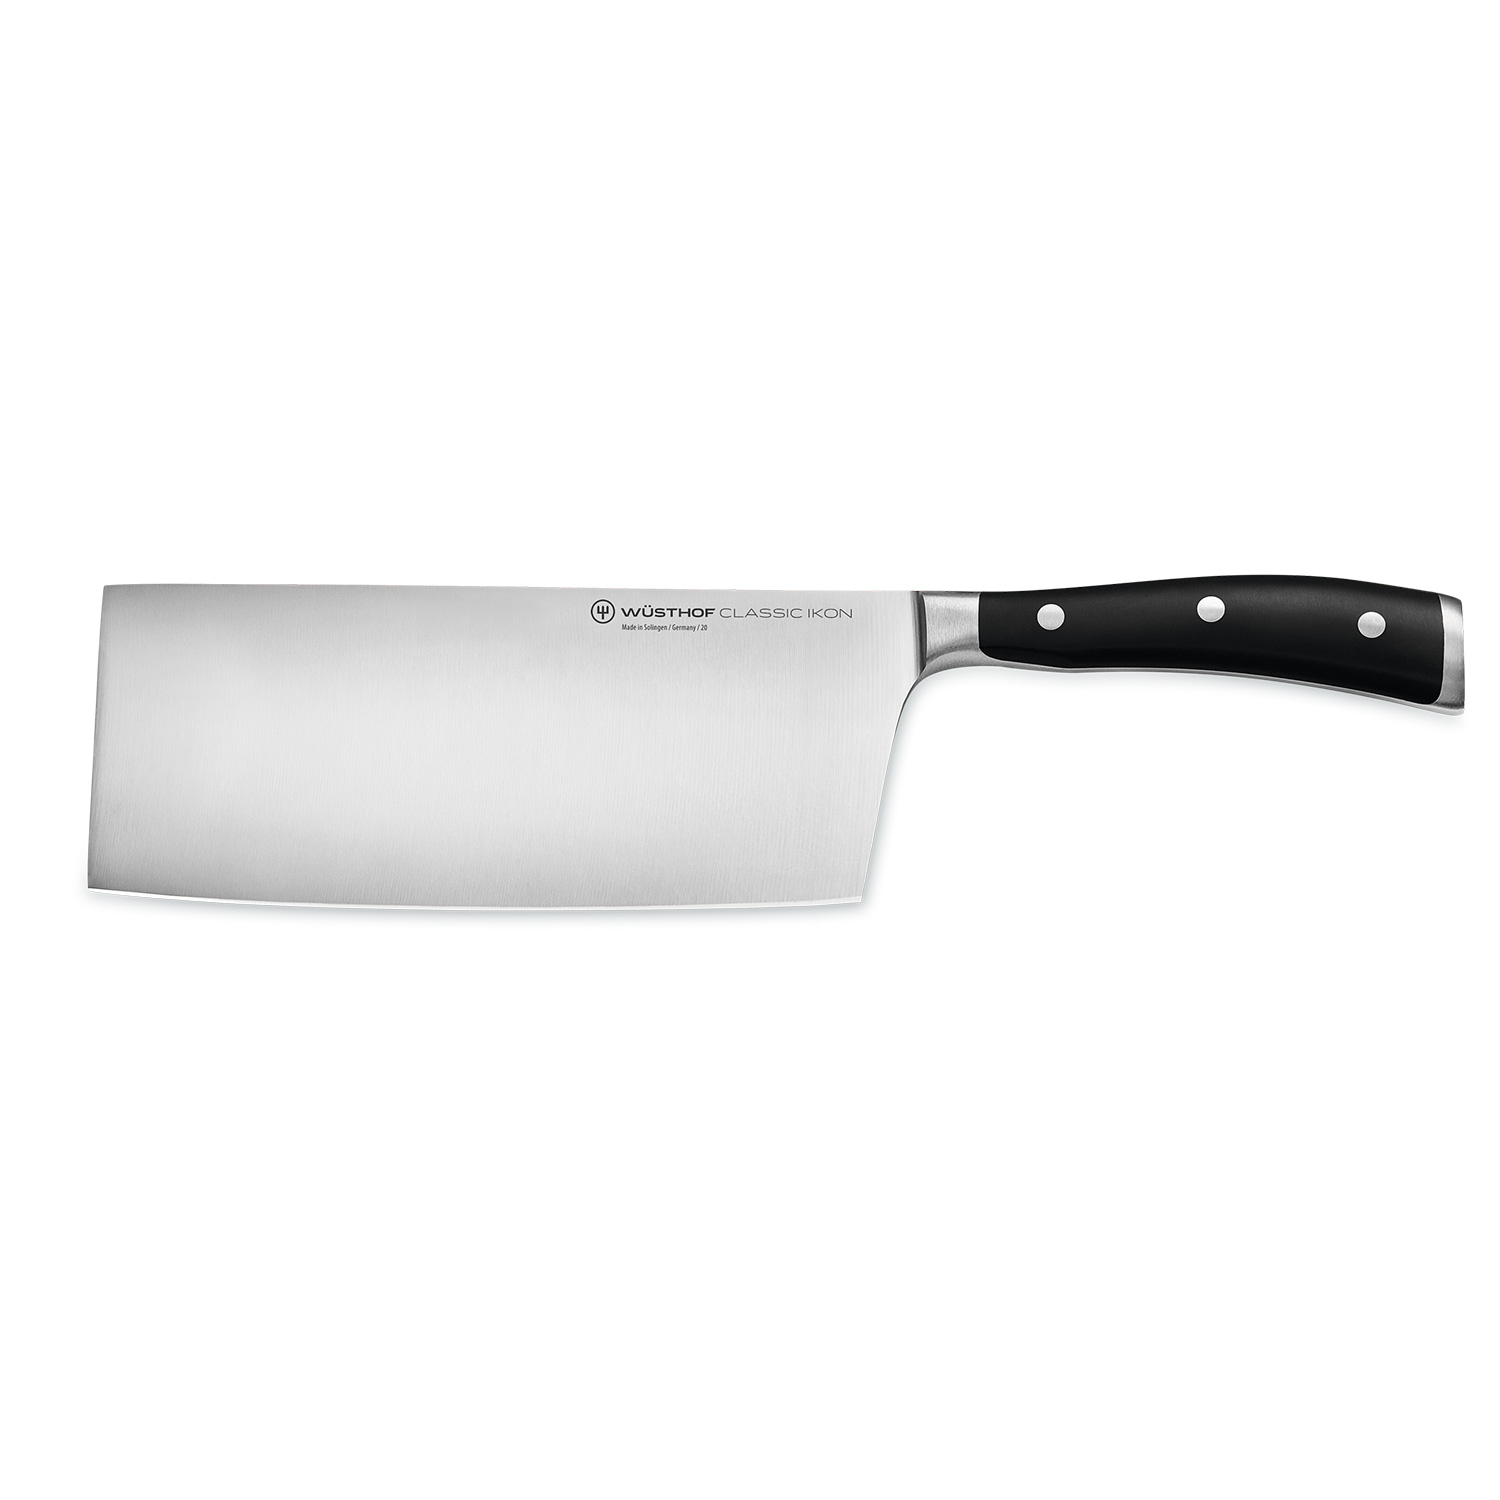 https://api-prod.royaldesign.se/api/products/image/2/wusthof-classic-ikon-chinese-chef-knife-18-cm-0